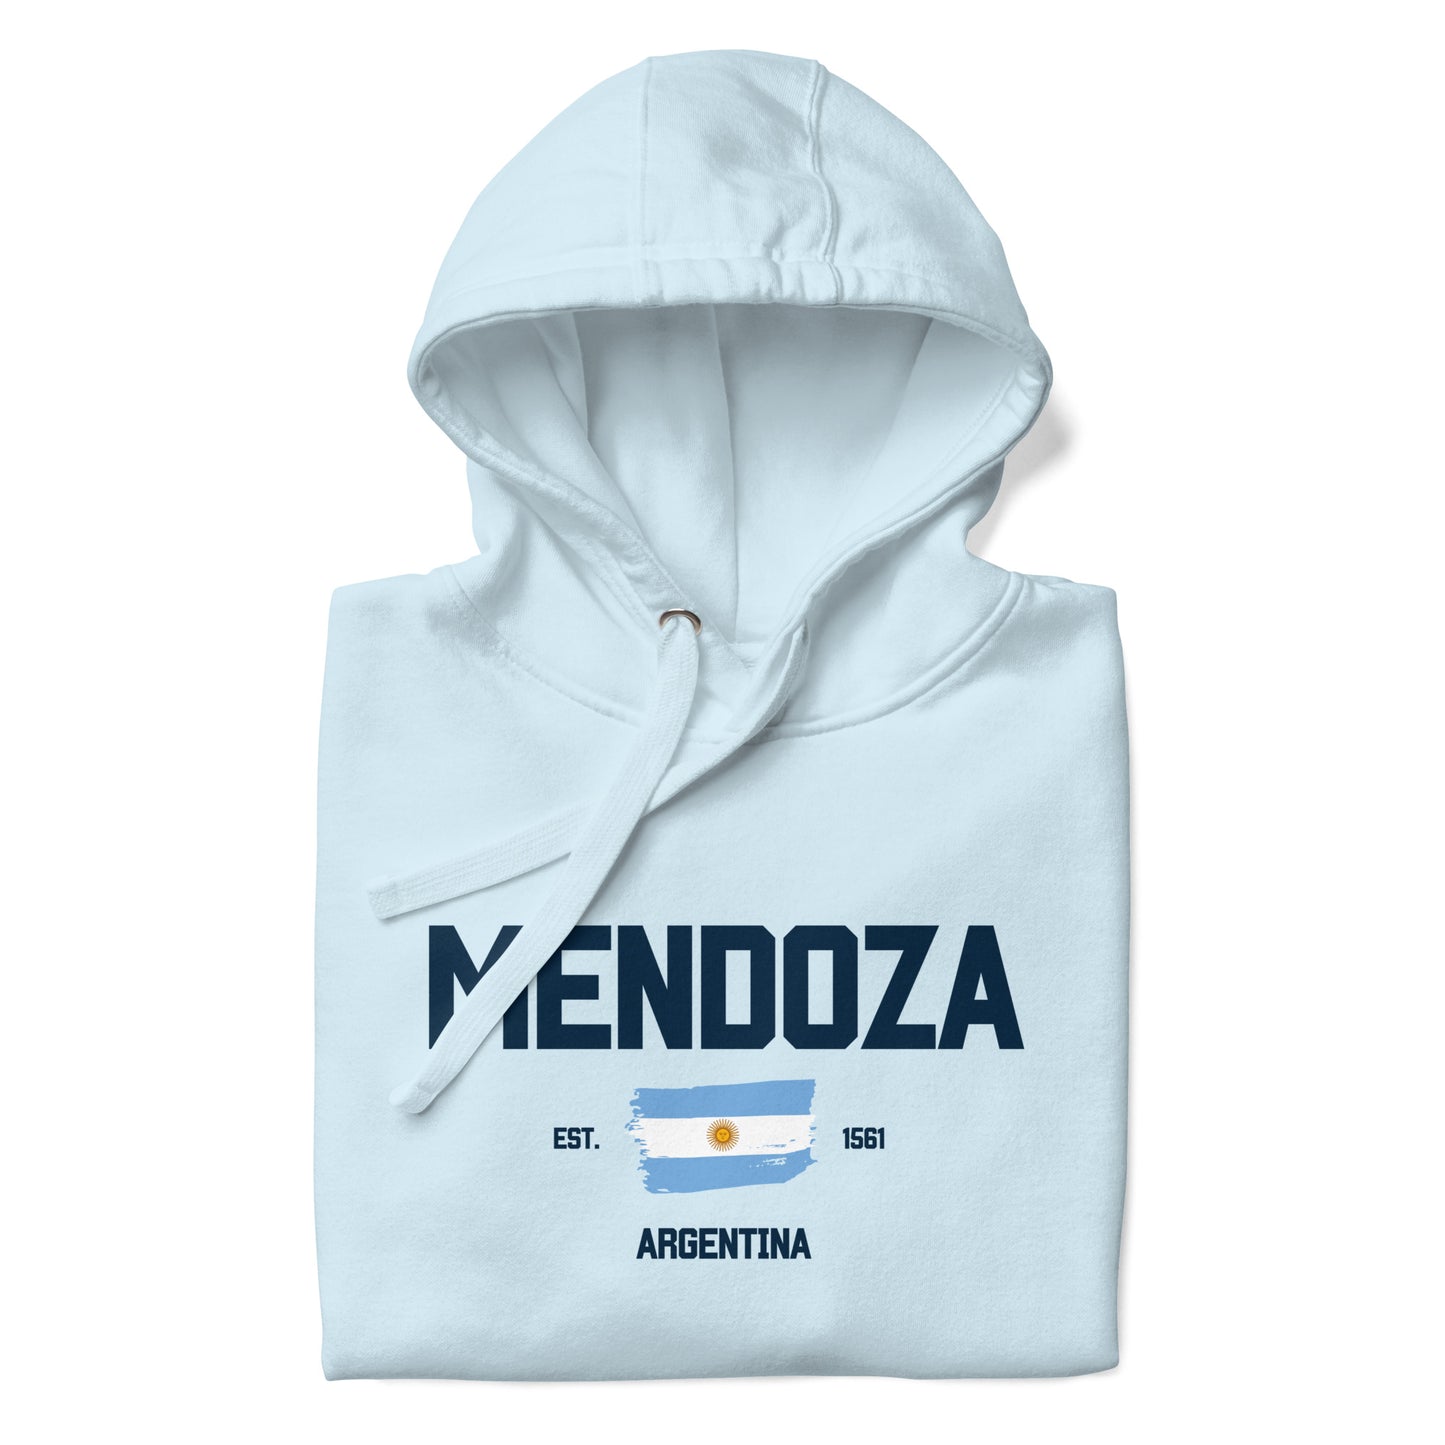 🇦🇷 Mendoza 1561 Hoodie